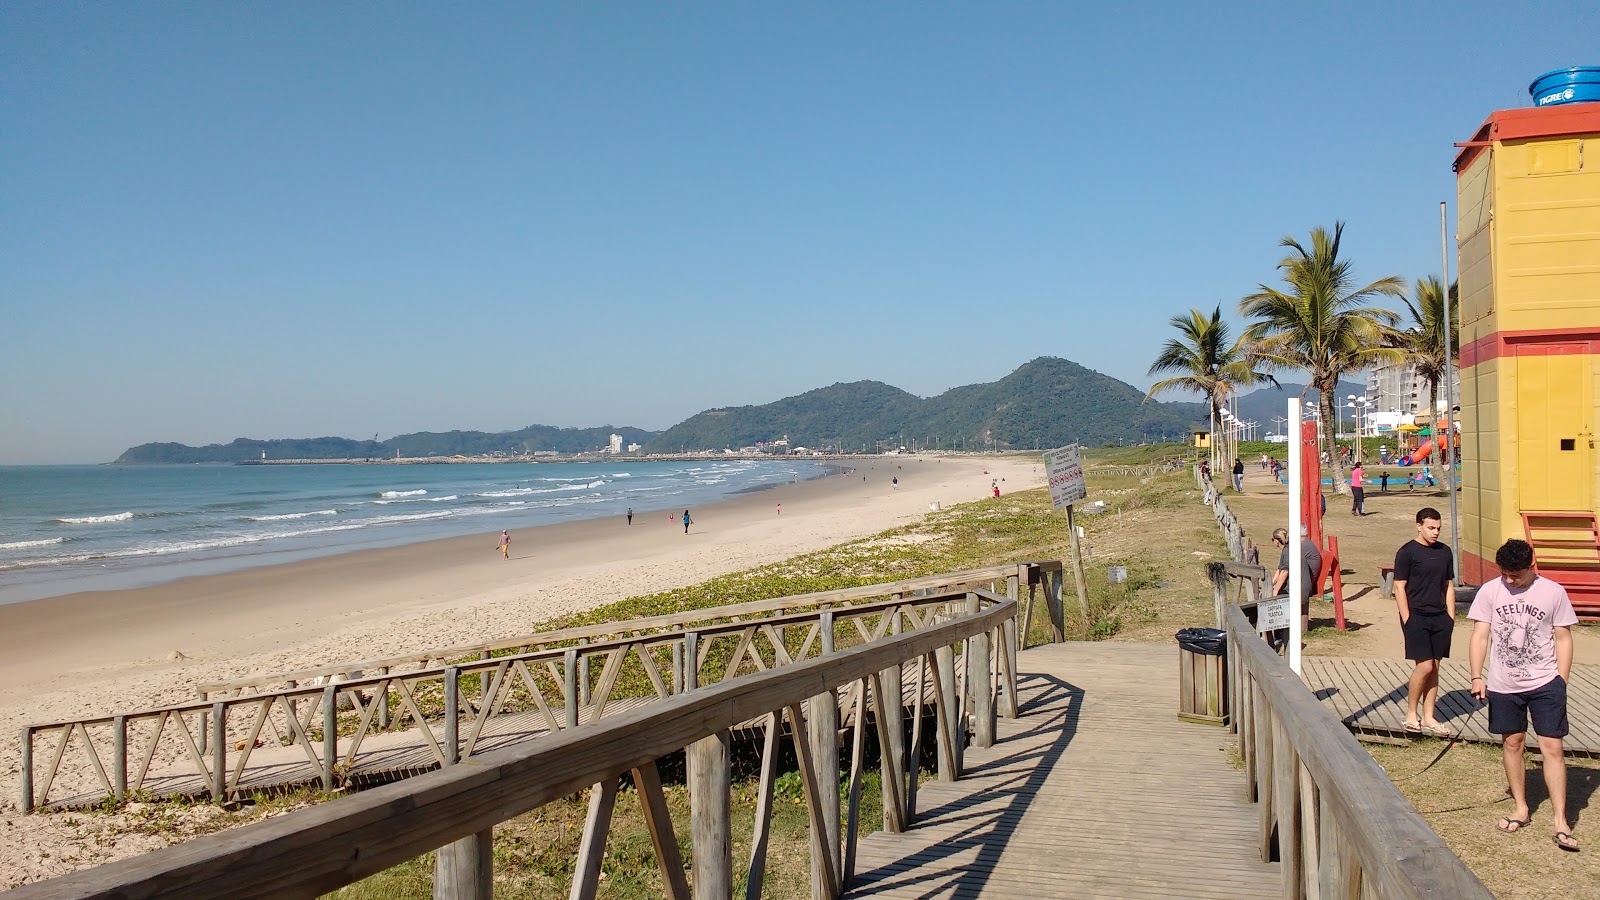 Praia de Navegantes'in fotoğrafı çok temiz temizlik seviyesi ile